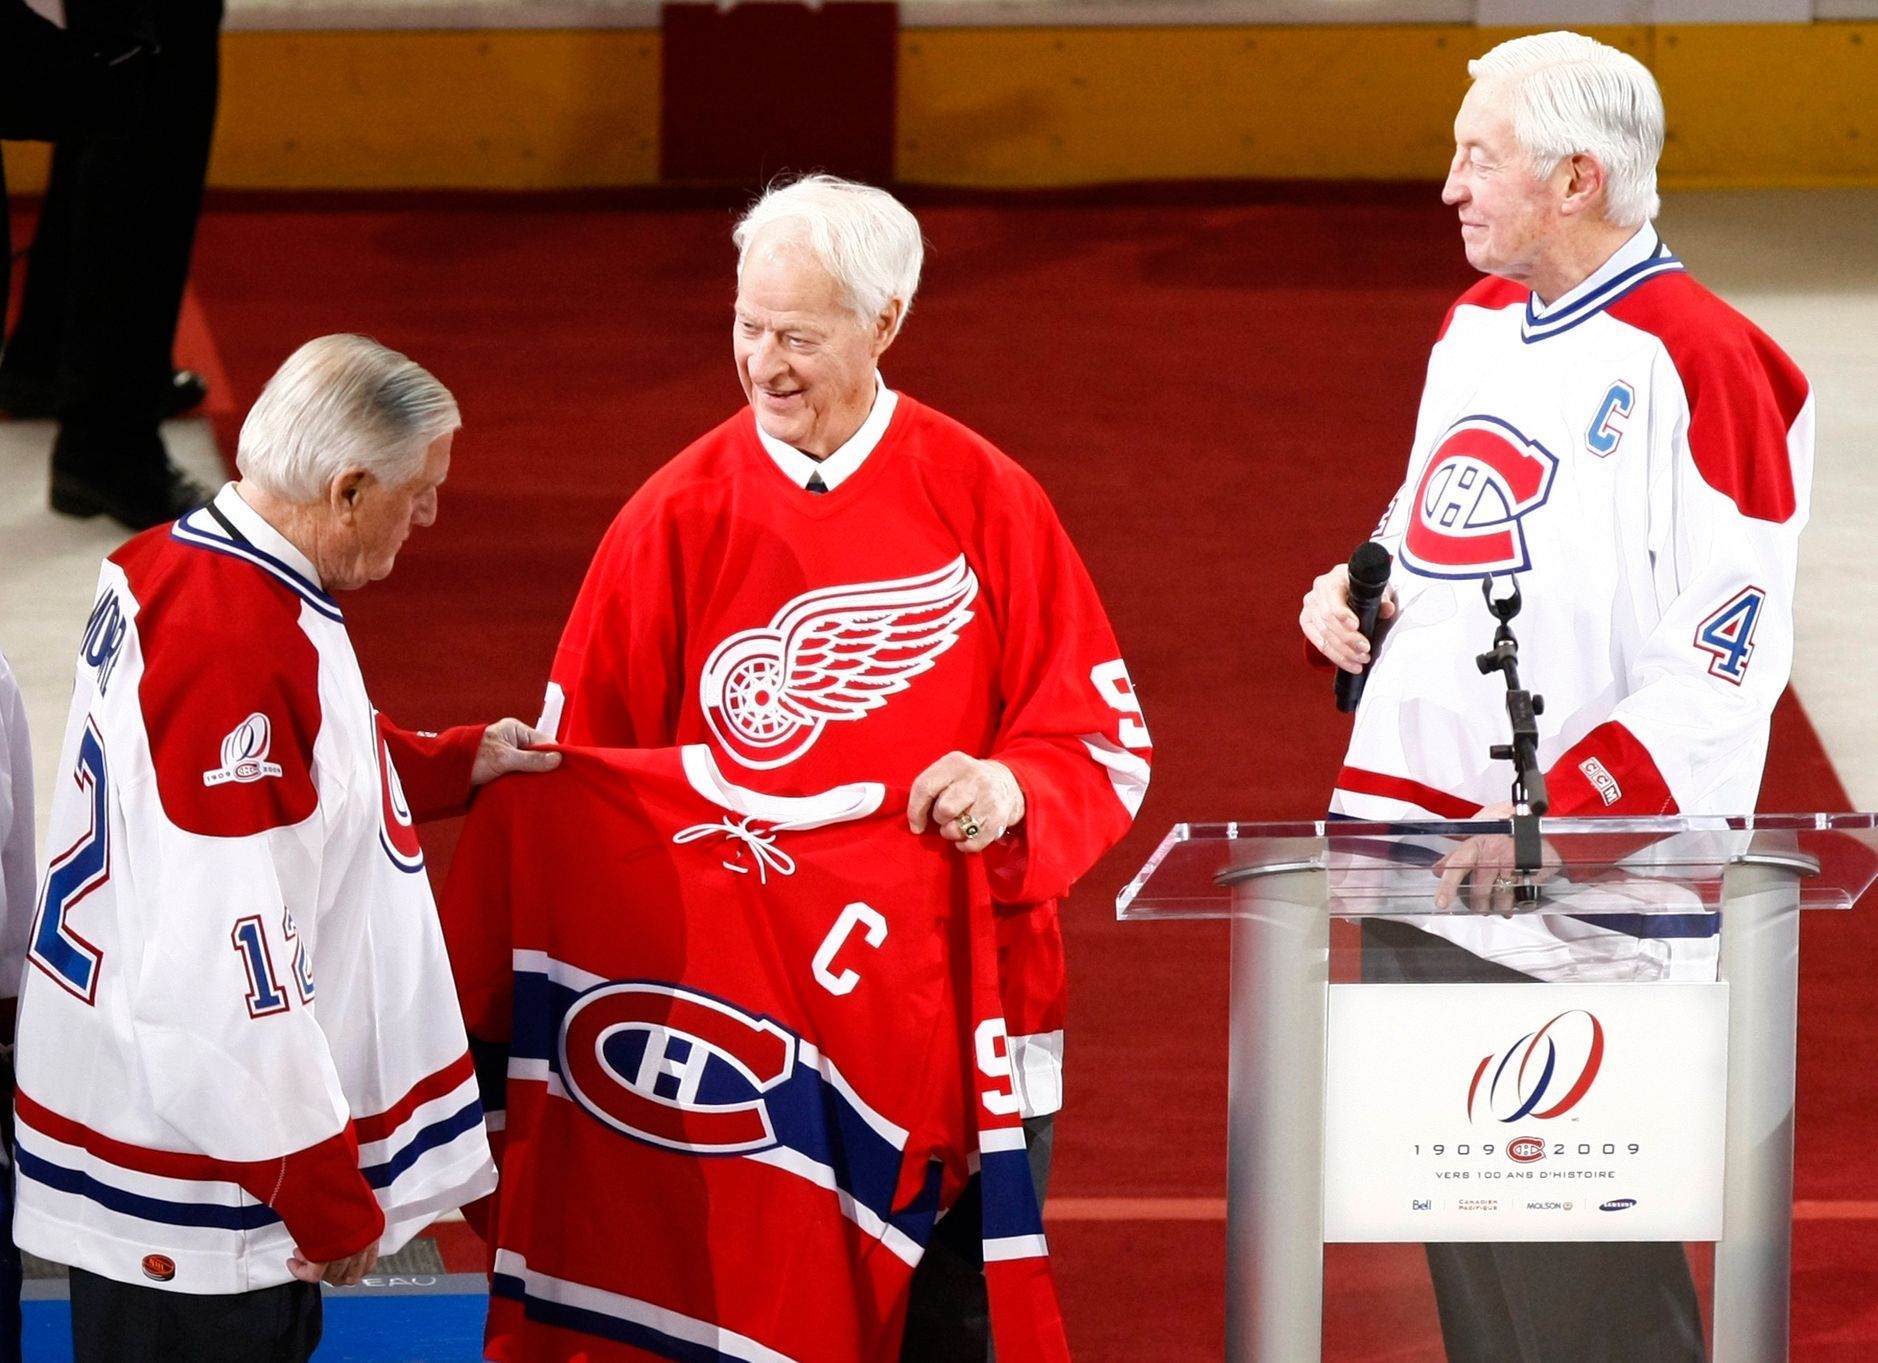 Legendy NHL Dickie Moore, Gordie Howe a Jean Beliveau